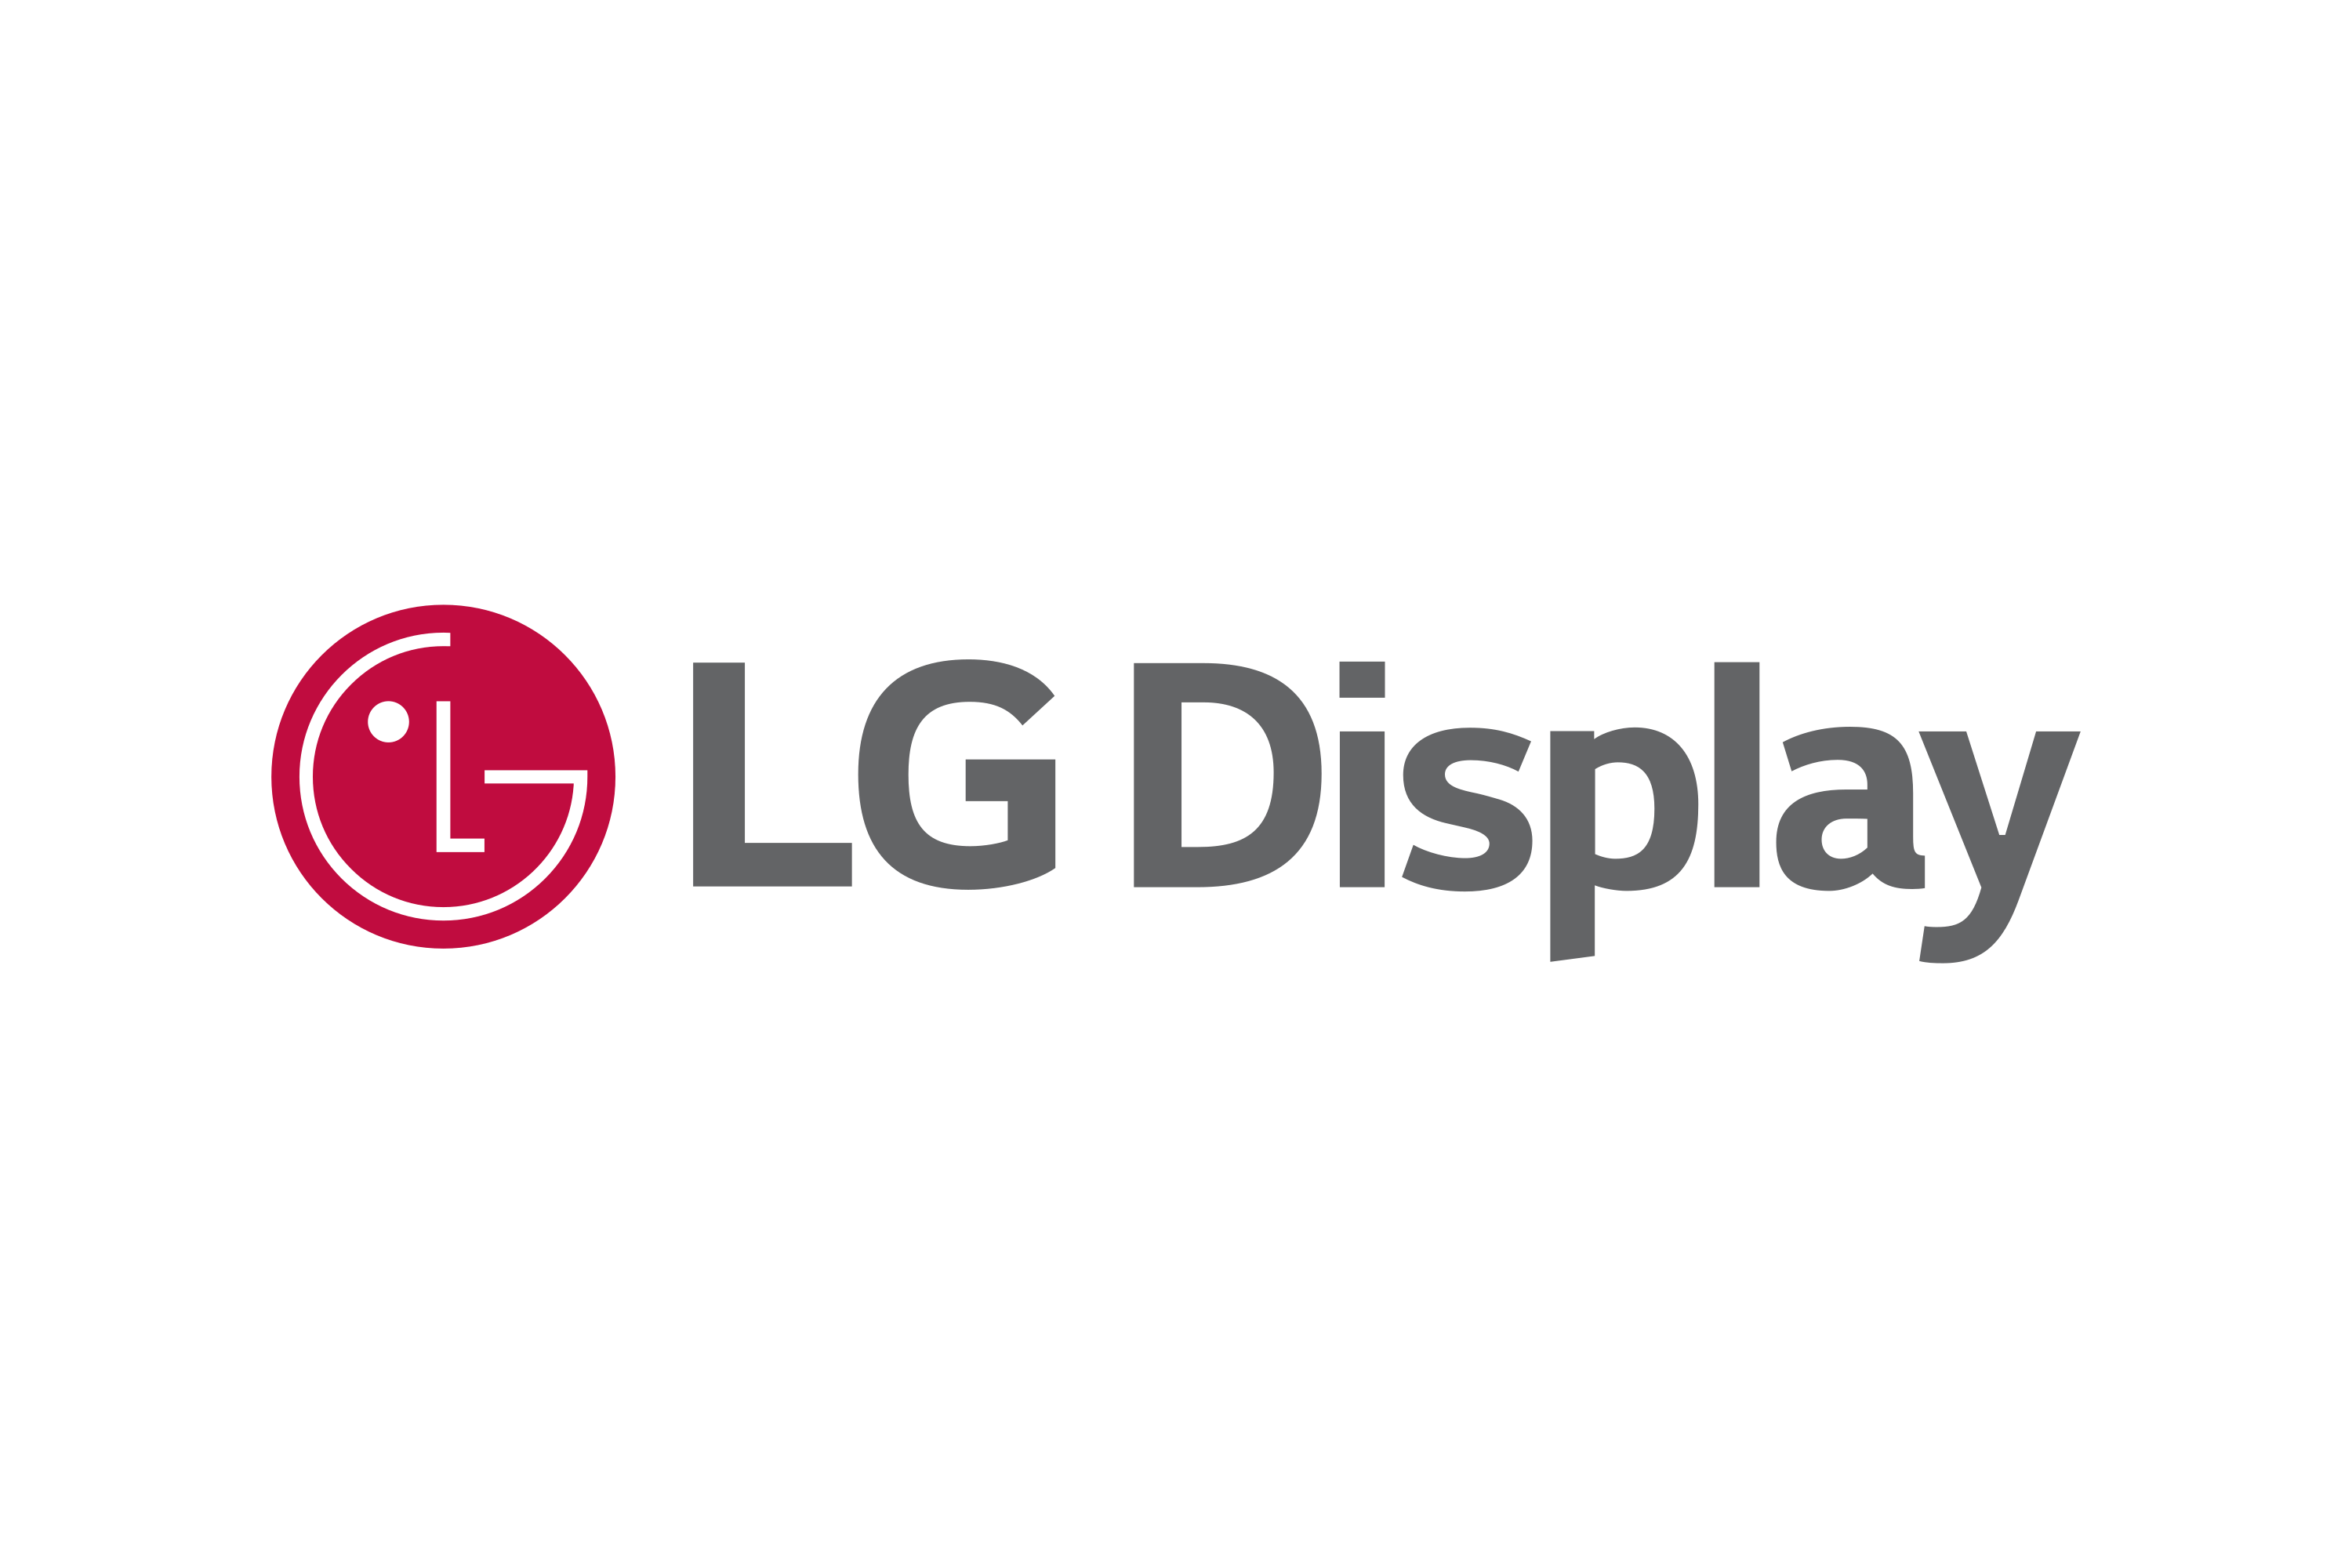 Logisch Disciplinair boezem Download LG Display Logo in SVG Vector or PNG File Format - Logo.wine